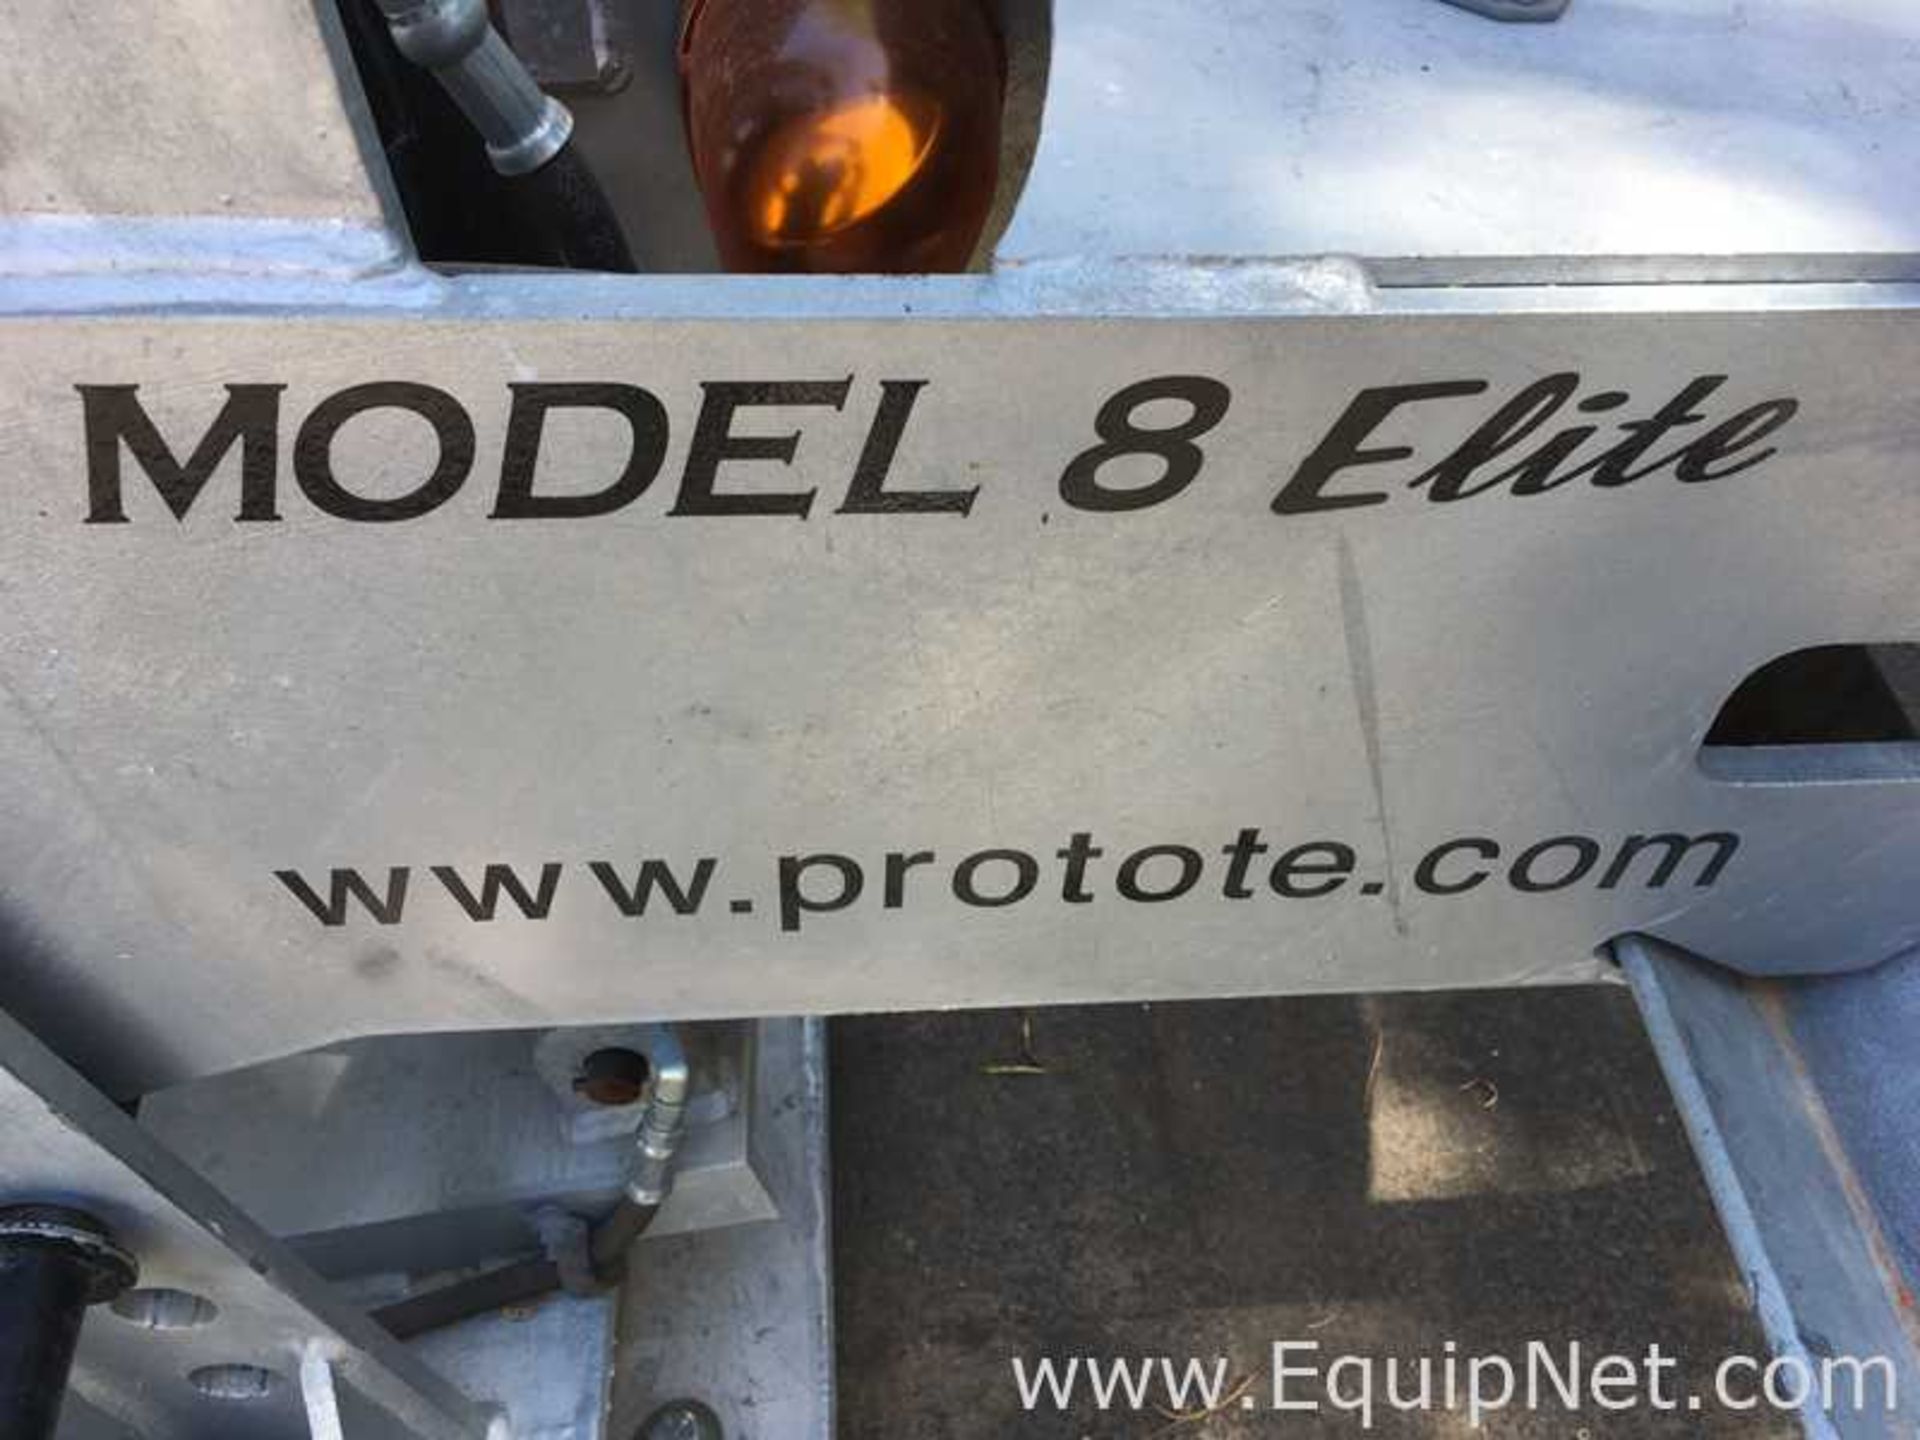 Pro-Tote Model 8 Elite 5th Wheel Wrecker Attachment - Image 2 of 7